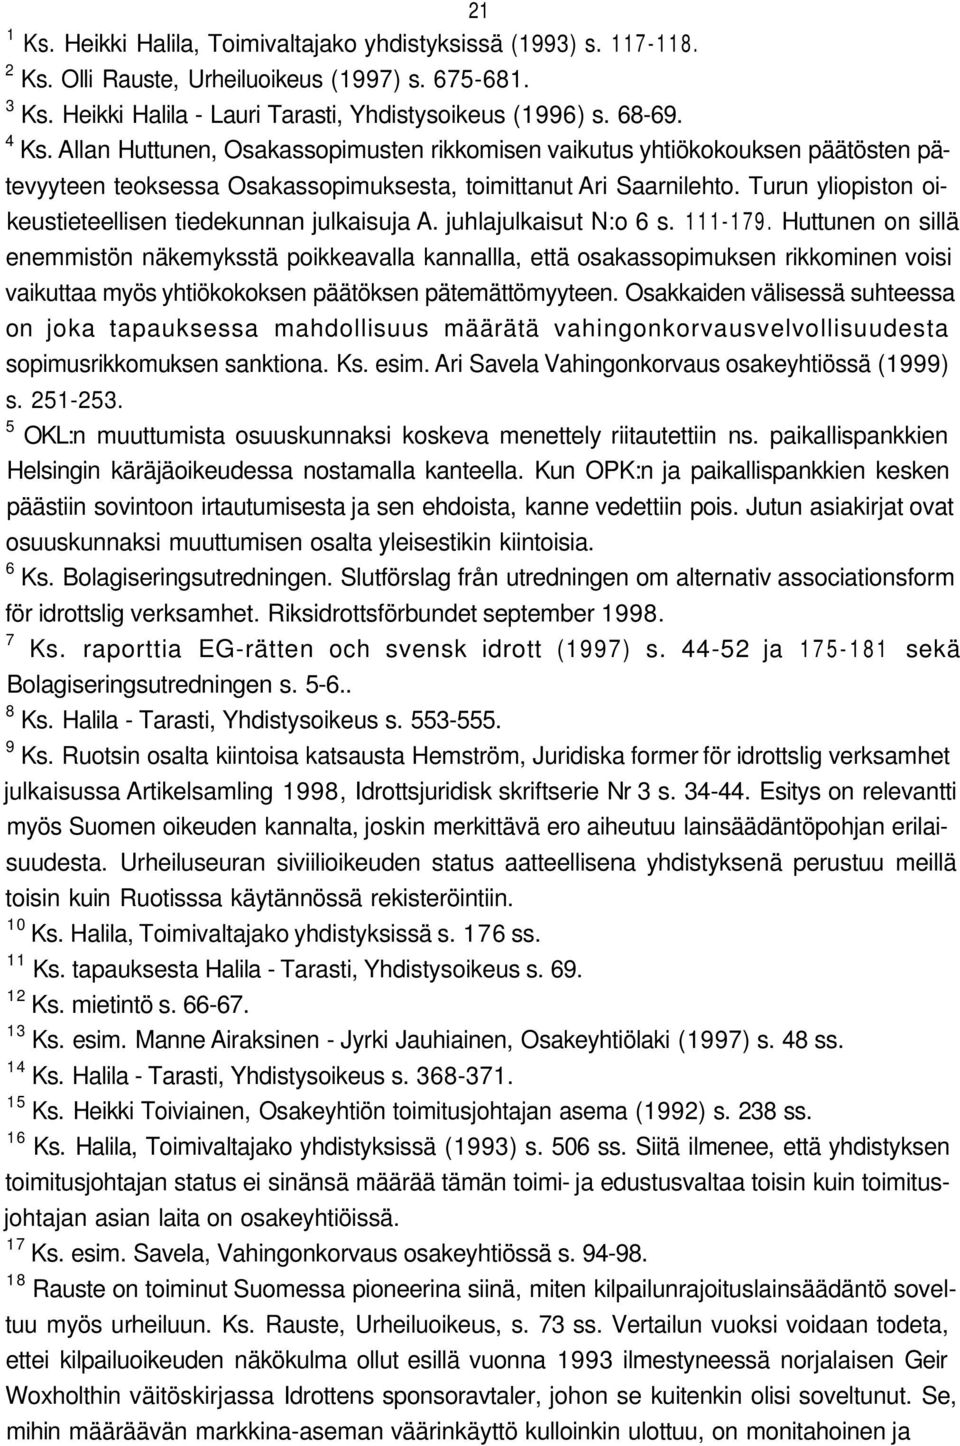 Turun yliopiston oikeustieteellisen tiedekunnan julkaisuja A. juhlajulkaisut N:o 6 s. 111-179.